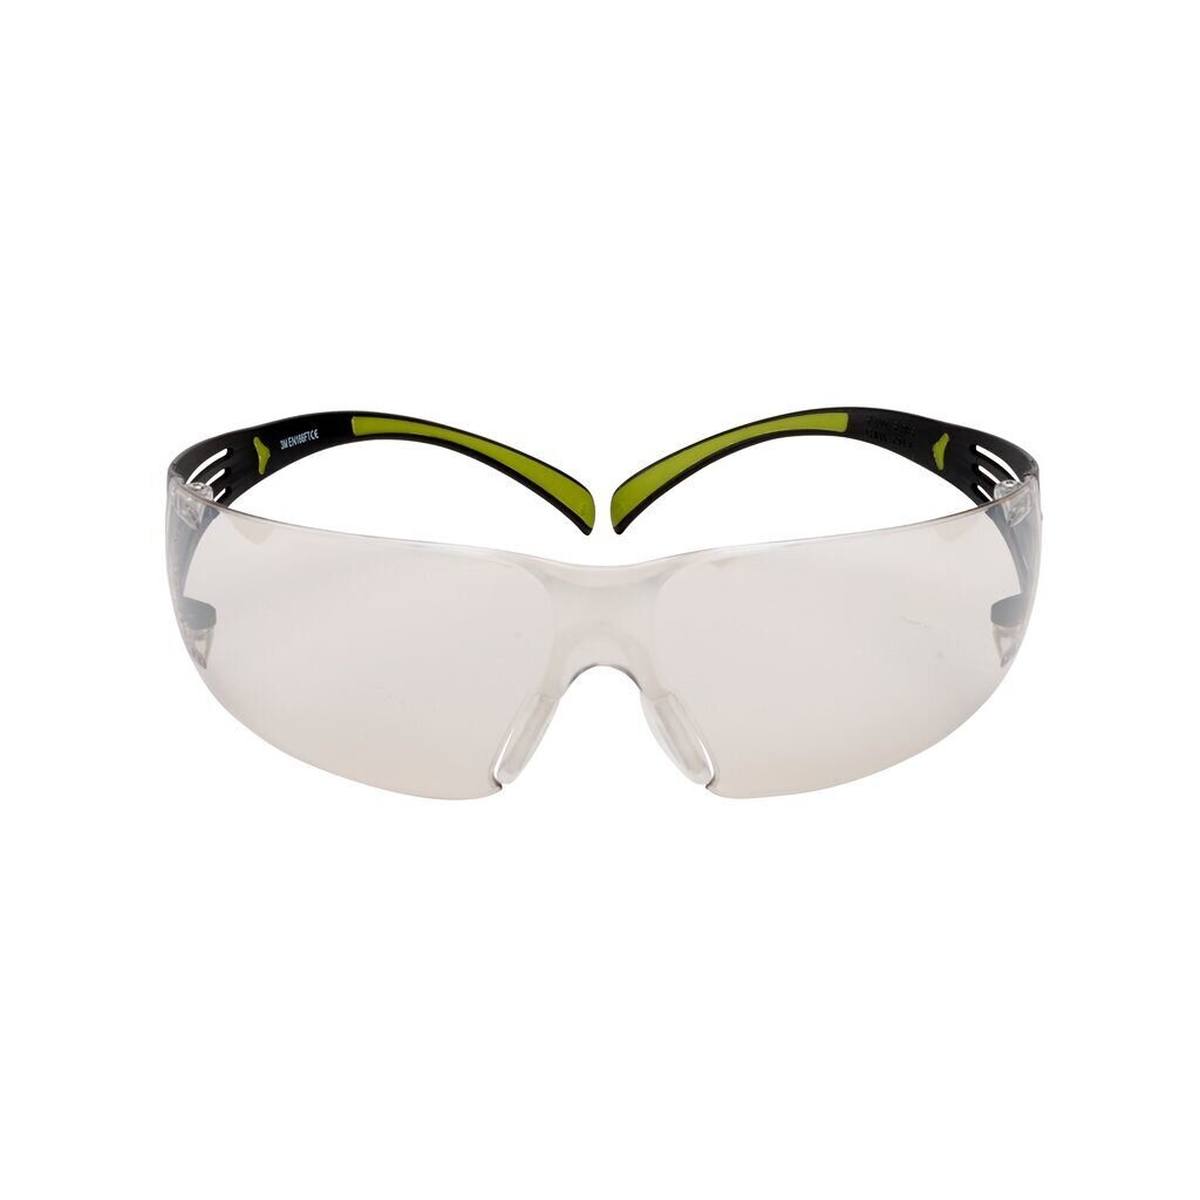 3M SecureFit 400 Schutzbrille, schwarz/grüne Bügel, Antikratz-Beschichtung, verspiegelte Scheibe für innen/außen, SF410AS-EU